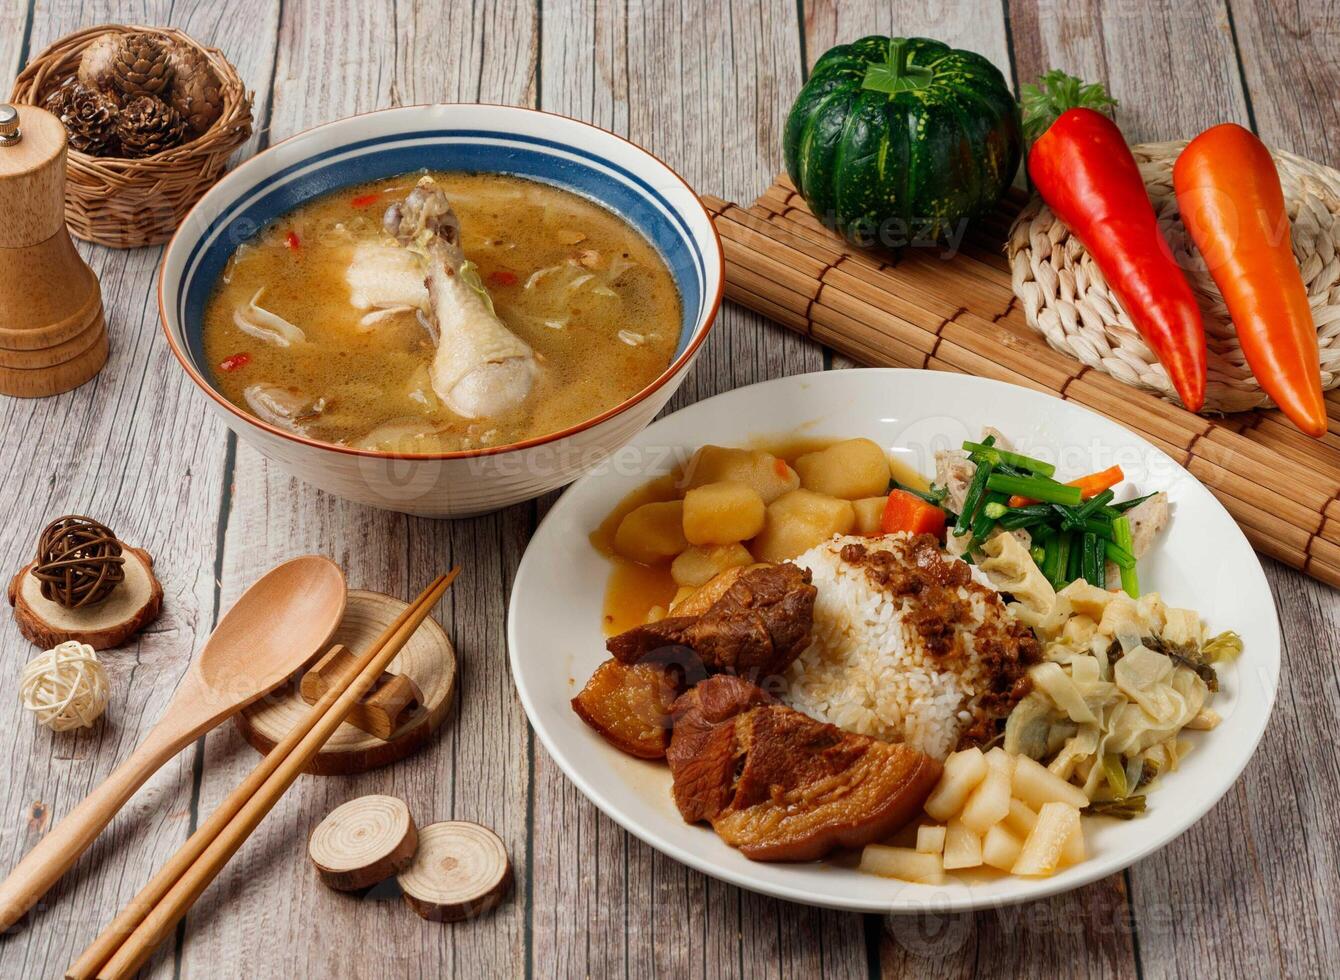 assorti ancien goût articulation riz, sésame pétrole poulet soupe servi dans plat isolé sur table Haut vue de Taïwan nourriture photo